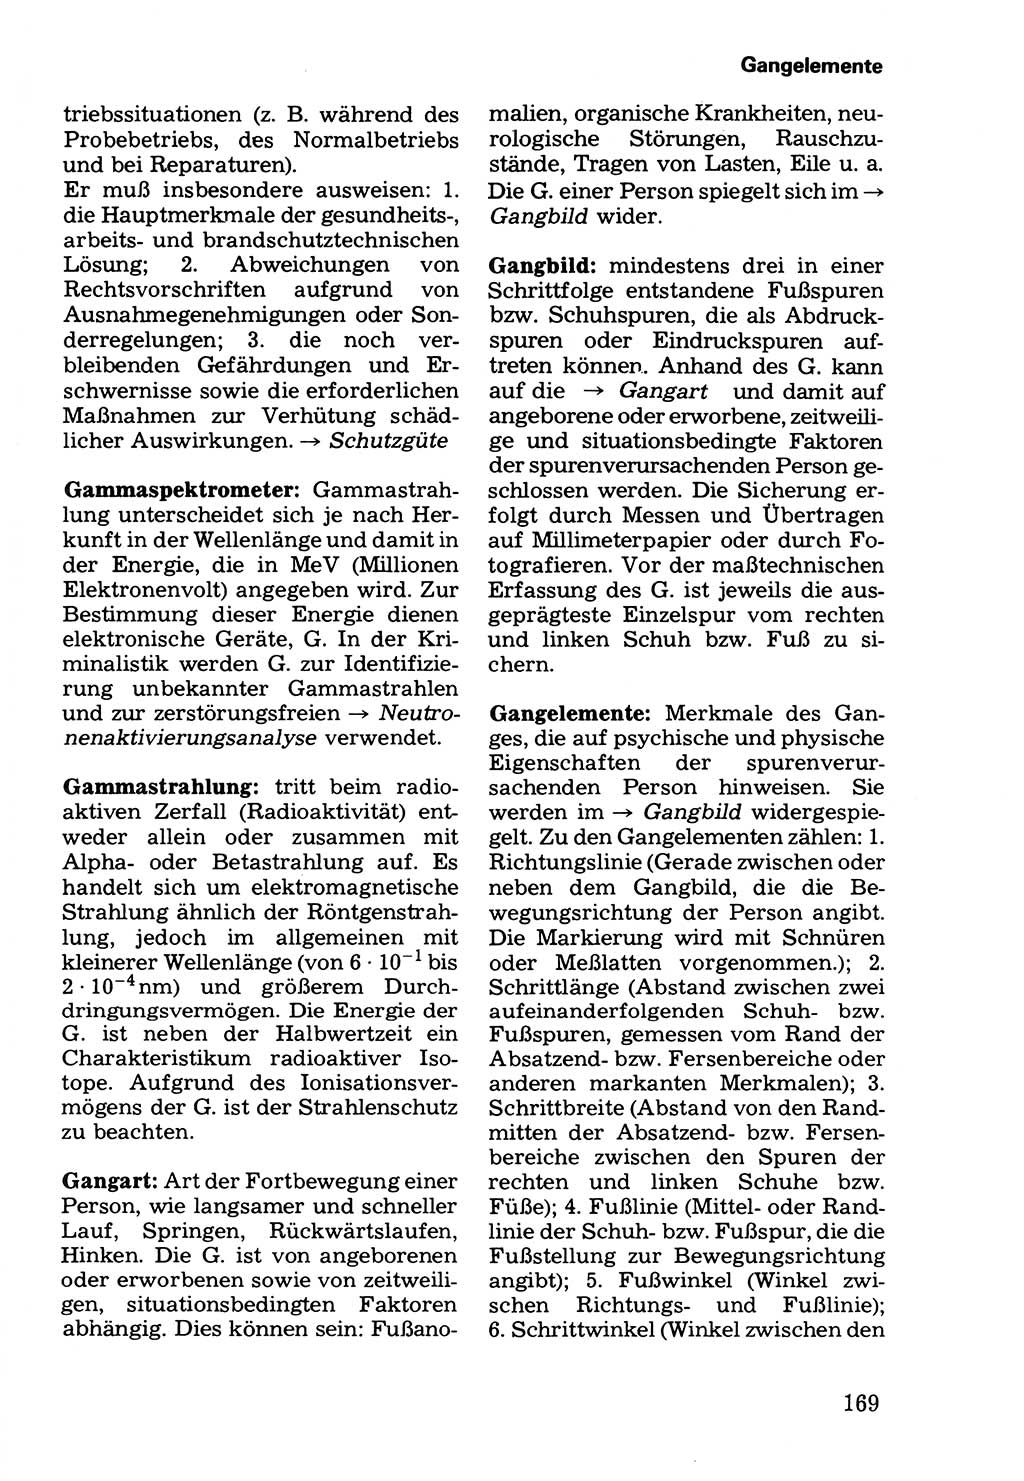 Wörterbuch der sozialistischen Kriminalistik [Deutsche Demokratische Republik (DDR)] 1981, Seite 169 (Wb. soz. Krim. DDR 1981, S. 169)